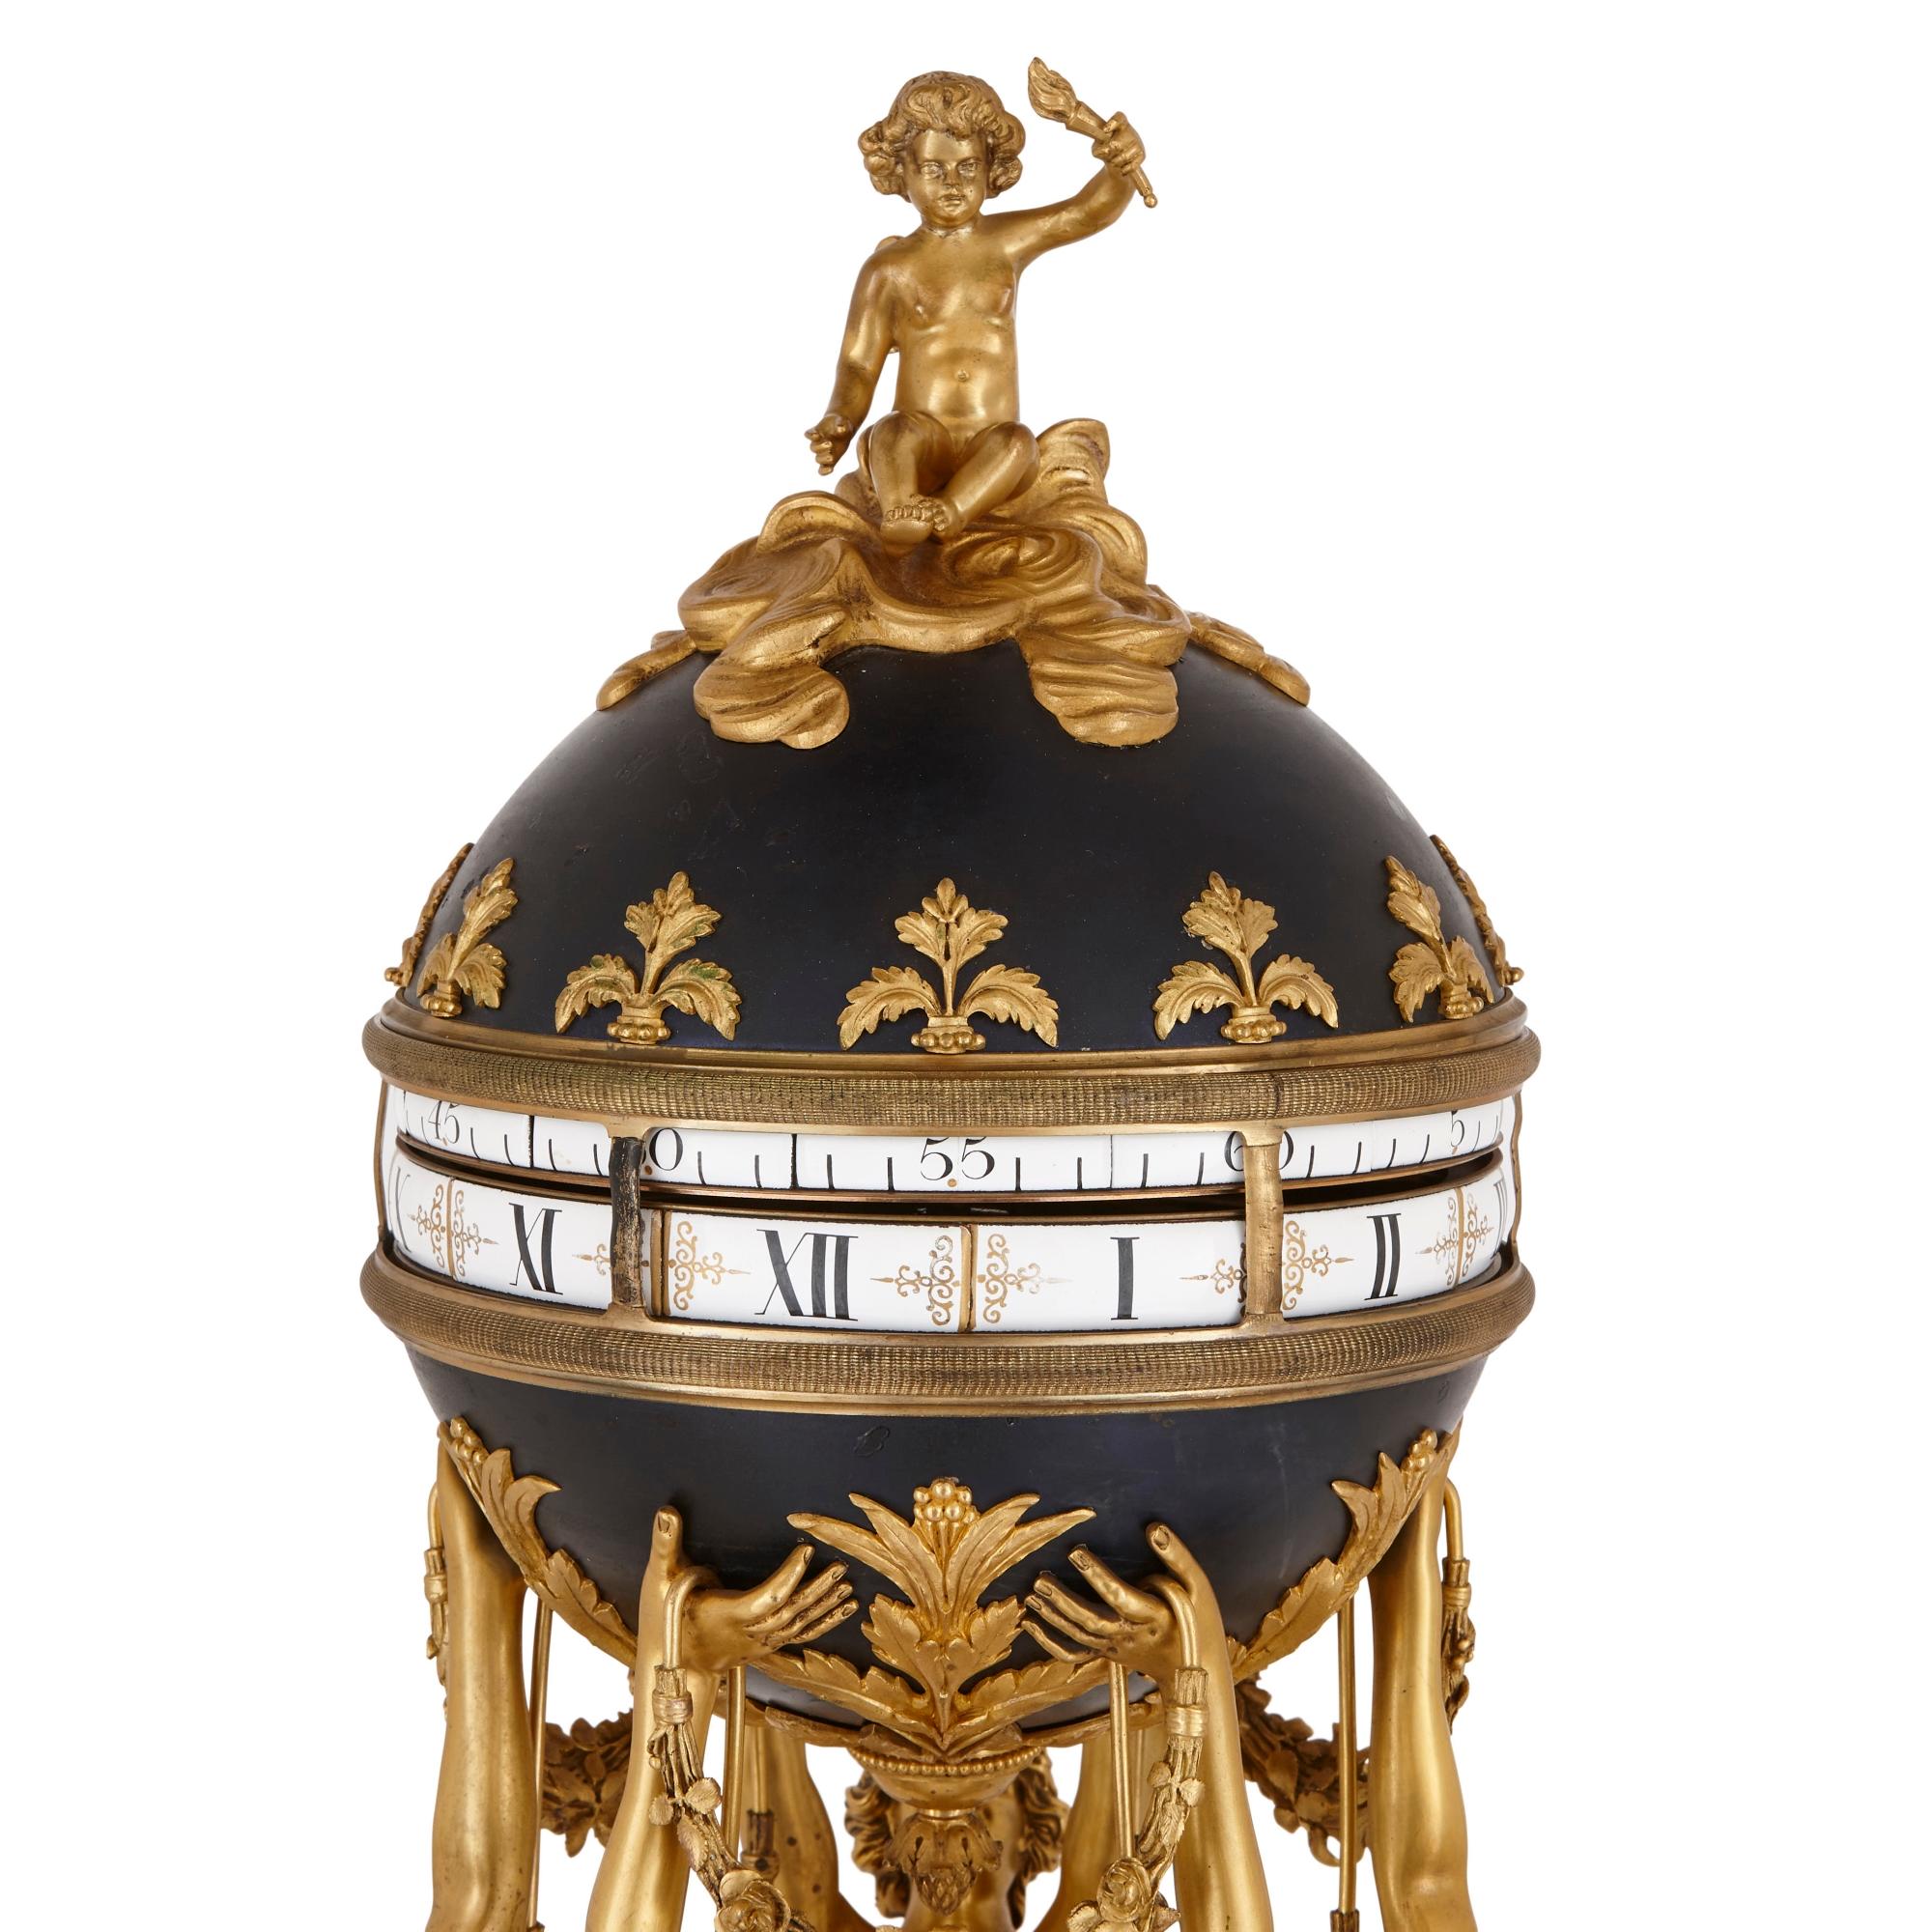 Diese außergewöhnliche Kaminsimsuhr wurde Anfang des 20. Jahrhunderts in Frankreich nach einem Modell des berühmten Metallarbeiters François Vion (1737-1790) aus dem 18. Das Design der Uhr umfasst Skulpturen der drei Grazien, die eine kugelförmige